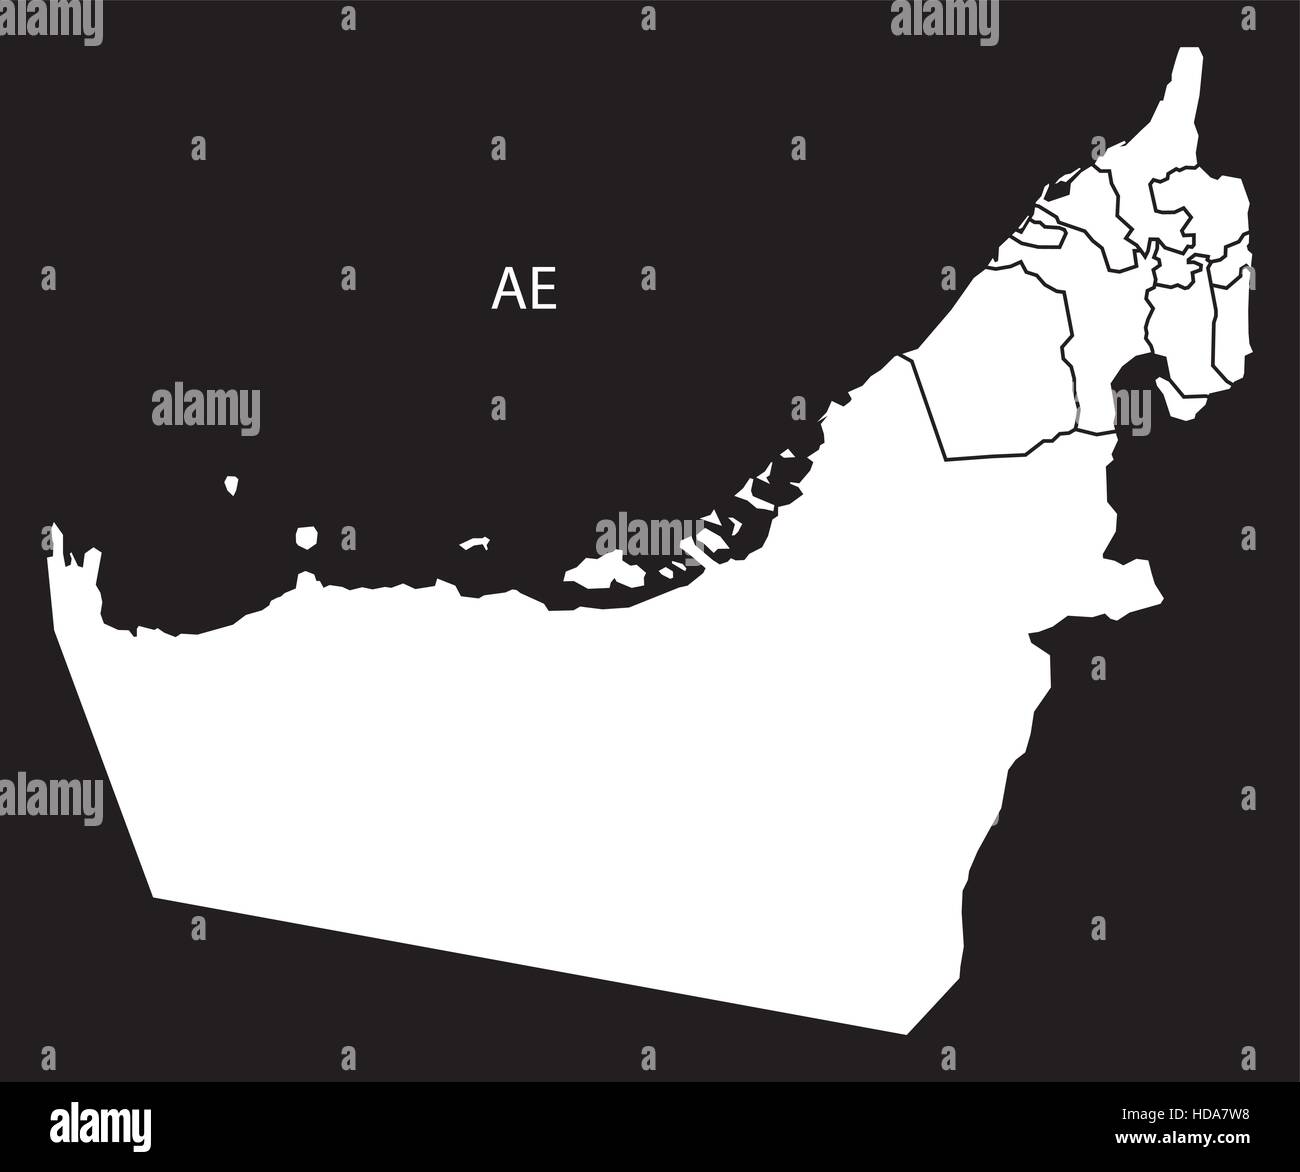 Vereinigte Arabische Emirate Emirate Karte schwarz-weiß Illustrationen Stock Vektor